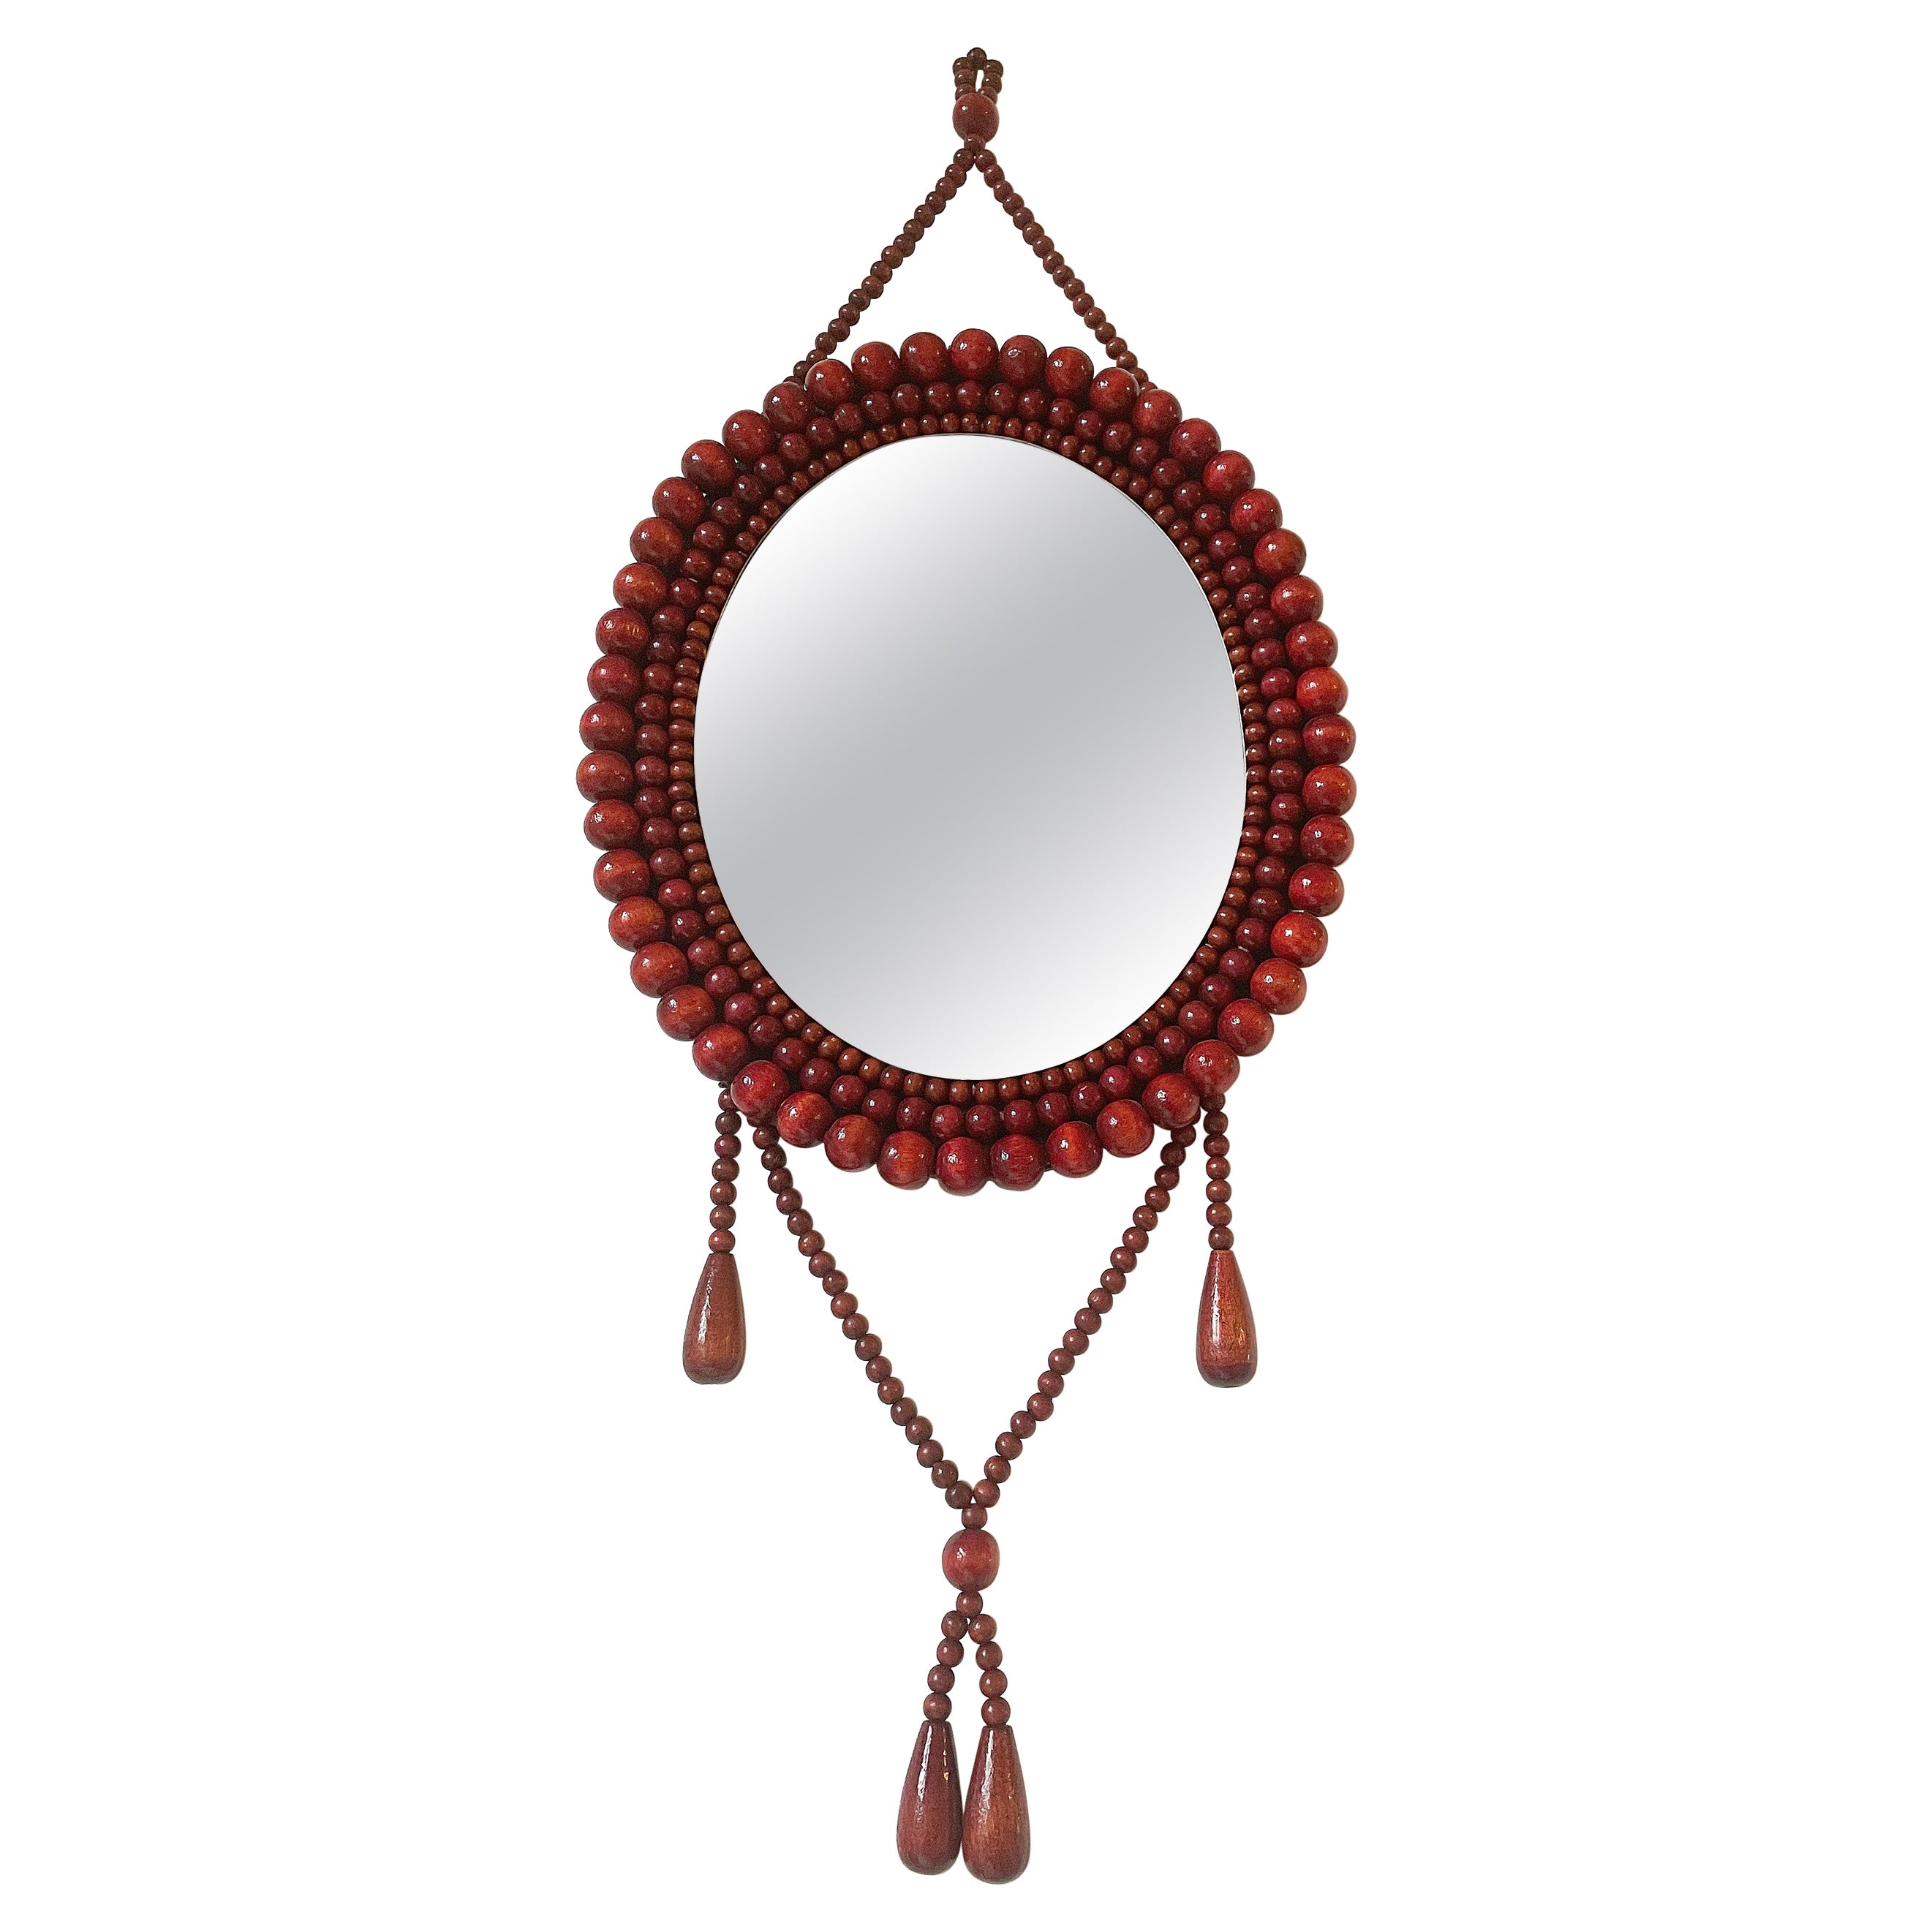 Finnish 1960s Aarikka Style Wooden Beads Wall Mirror For Sale